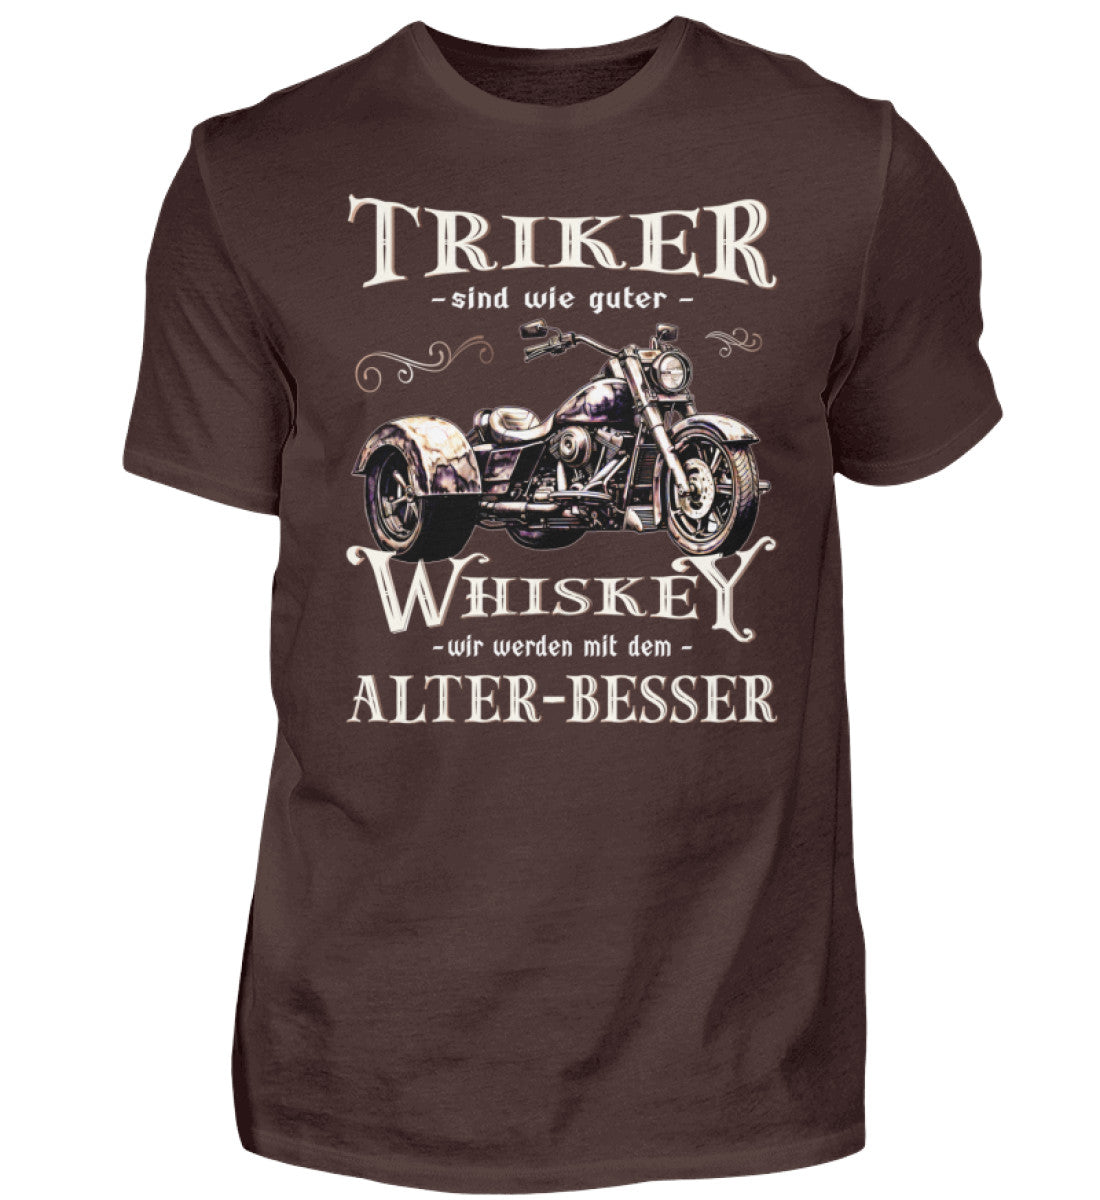 Ein T-Shirt für Trike Fahrer von Wingbikers mit dem Aufdruck, Triker sind wie guter Whiskey - Wir werden mit dem Alter besser, in braun.